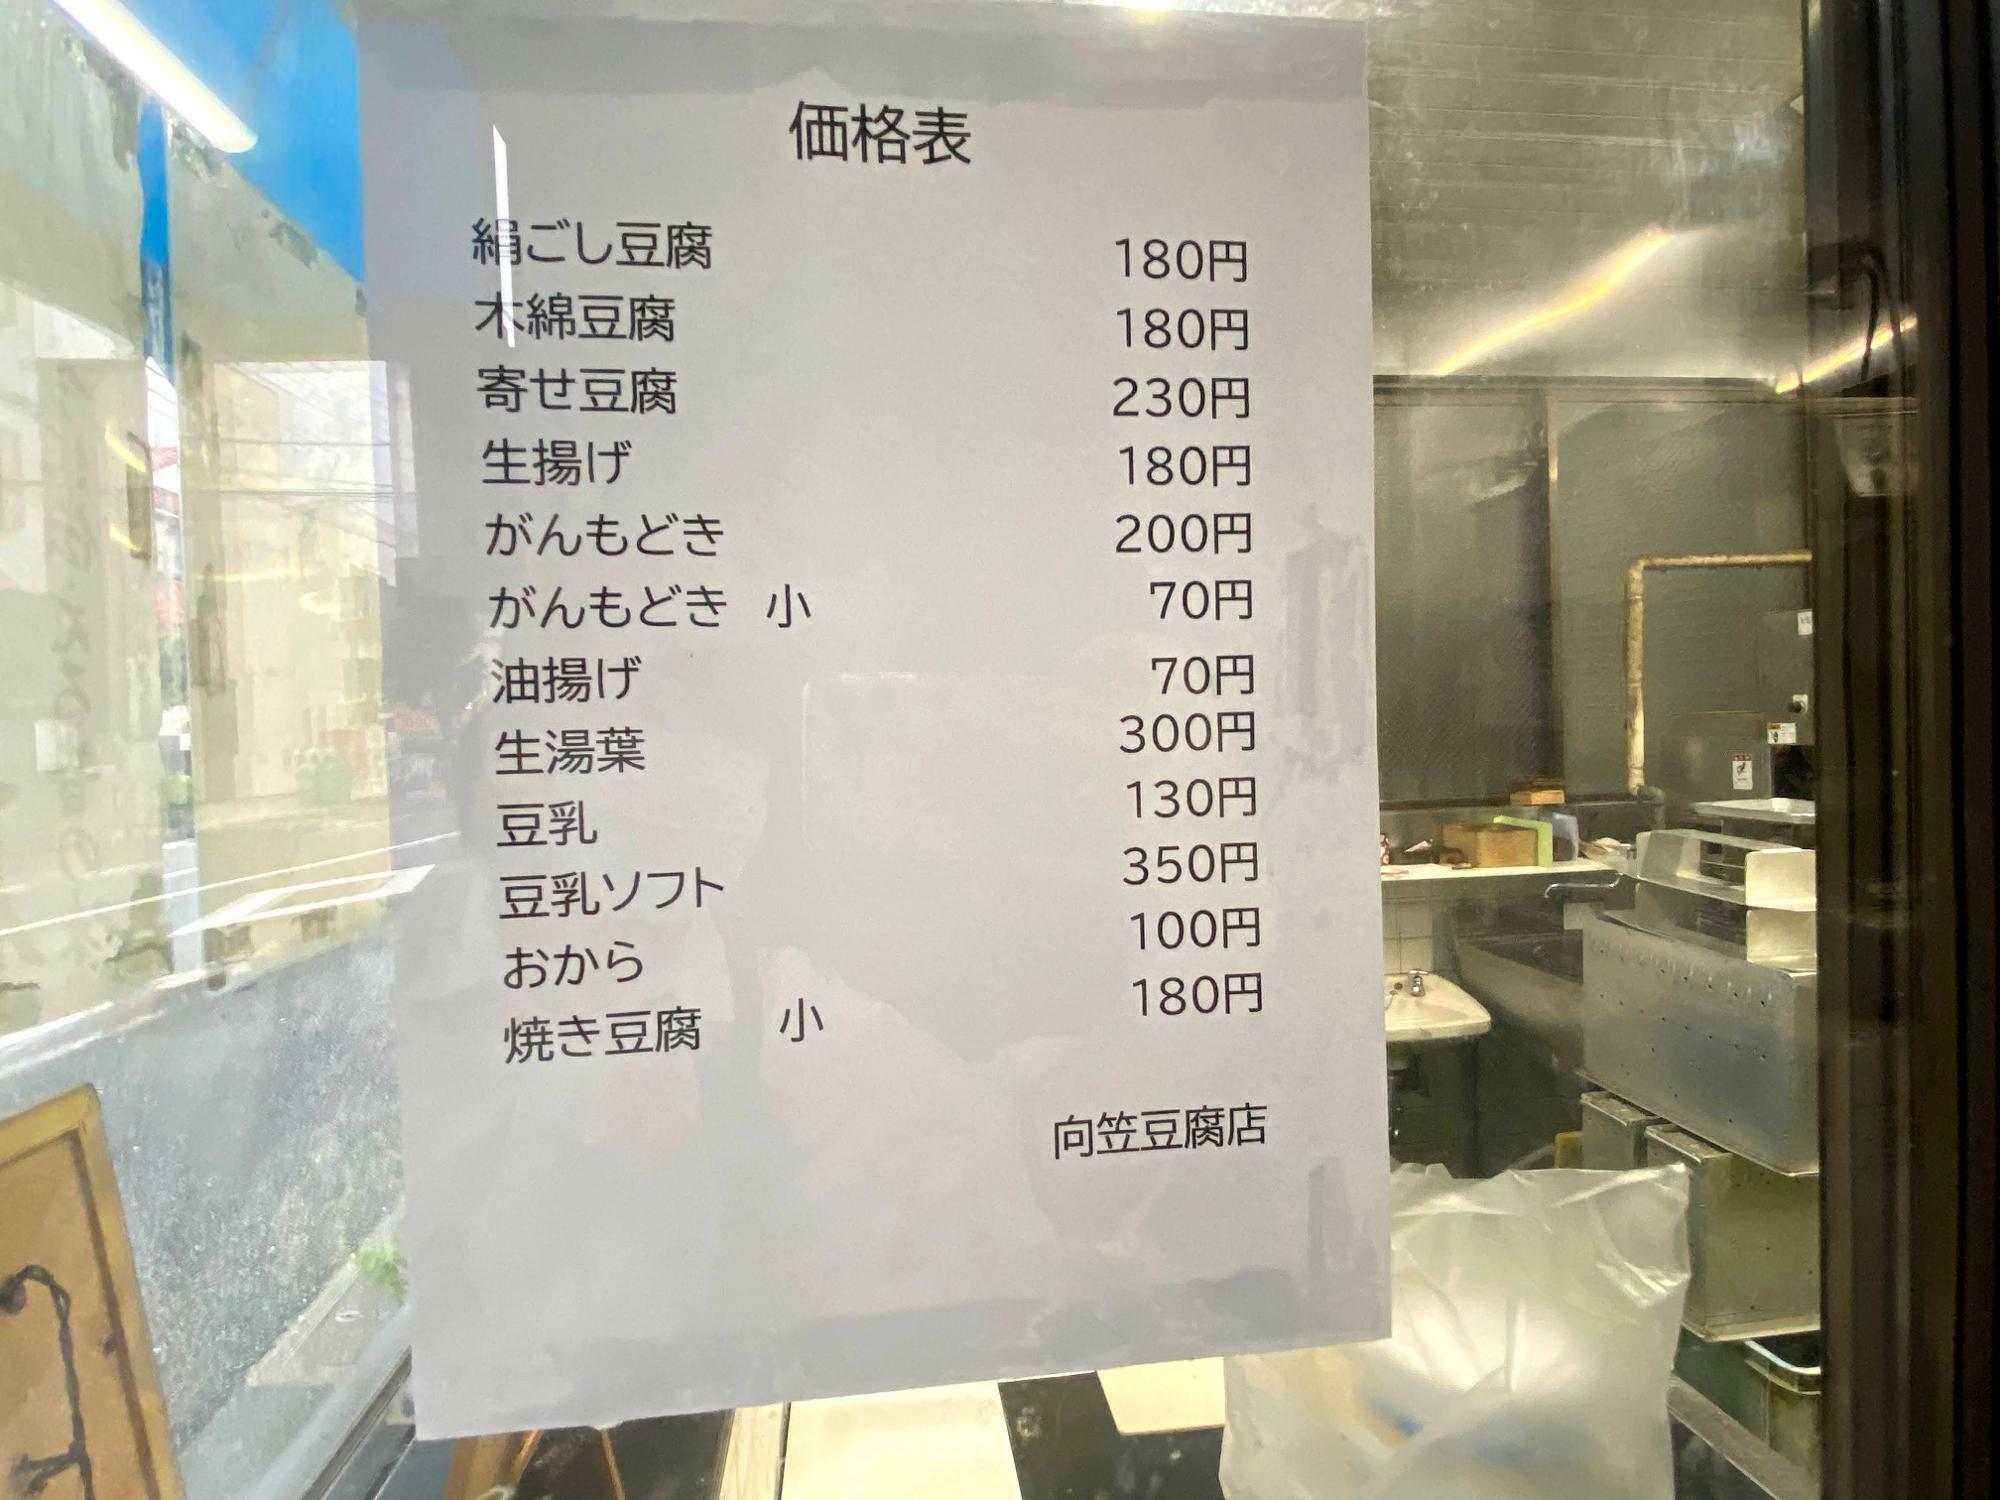 「向笠豆腐店」メニュー表